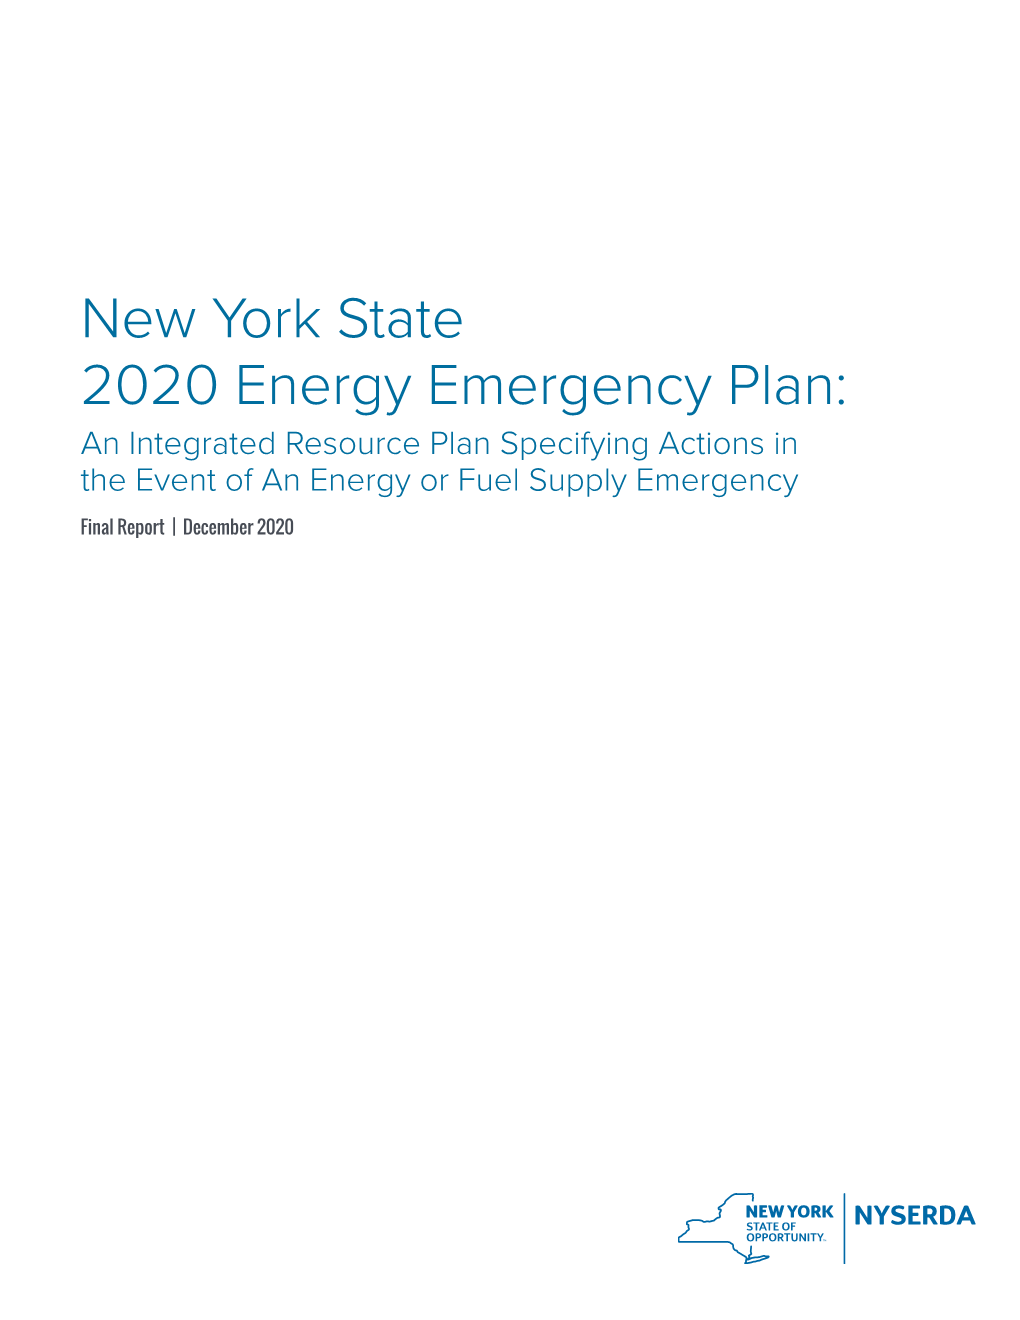 2020 New York State Energy Emergency Plan